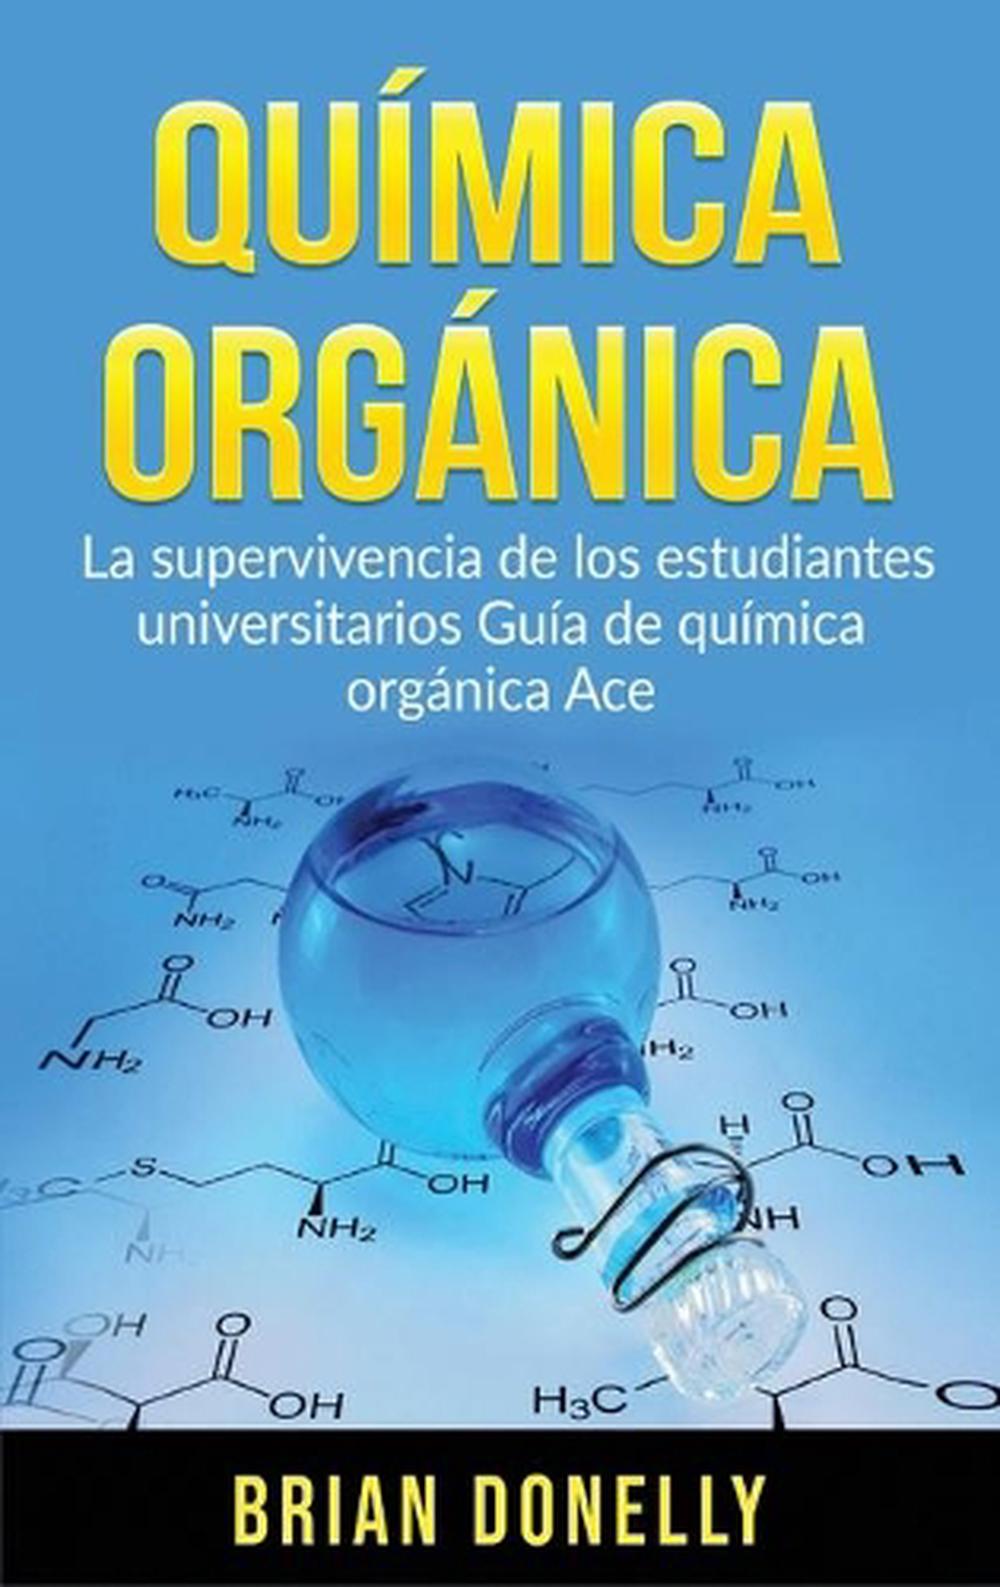 quimica organica vollhardt download